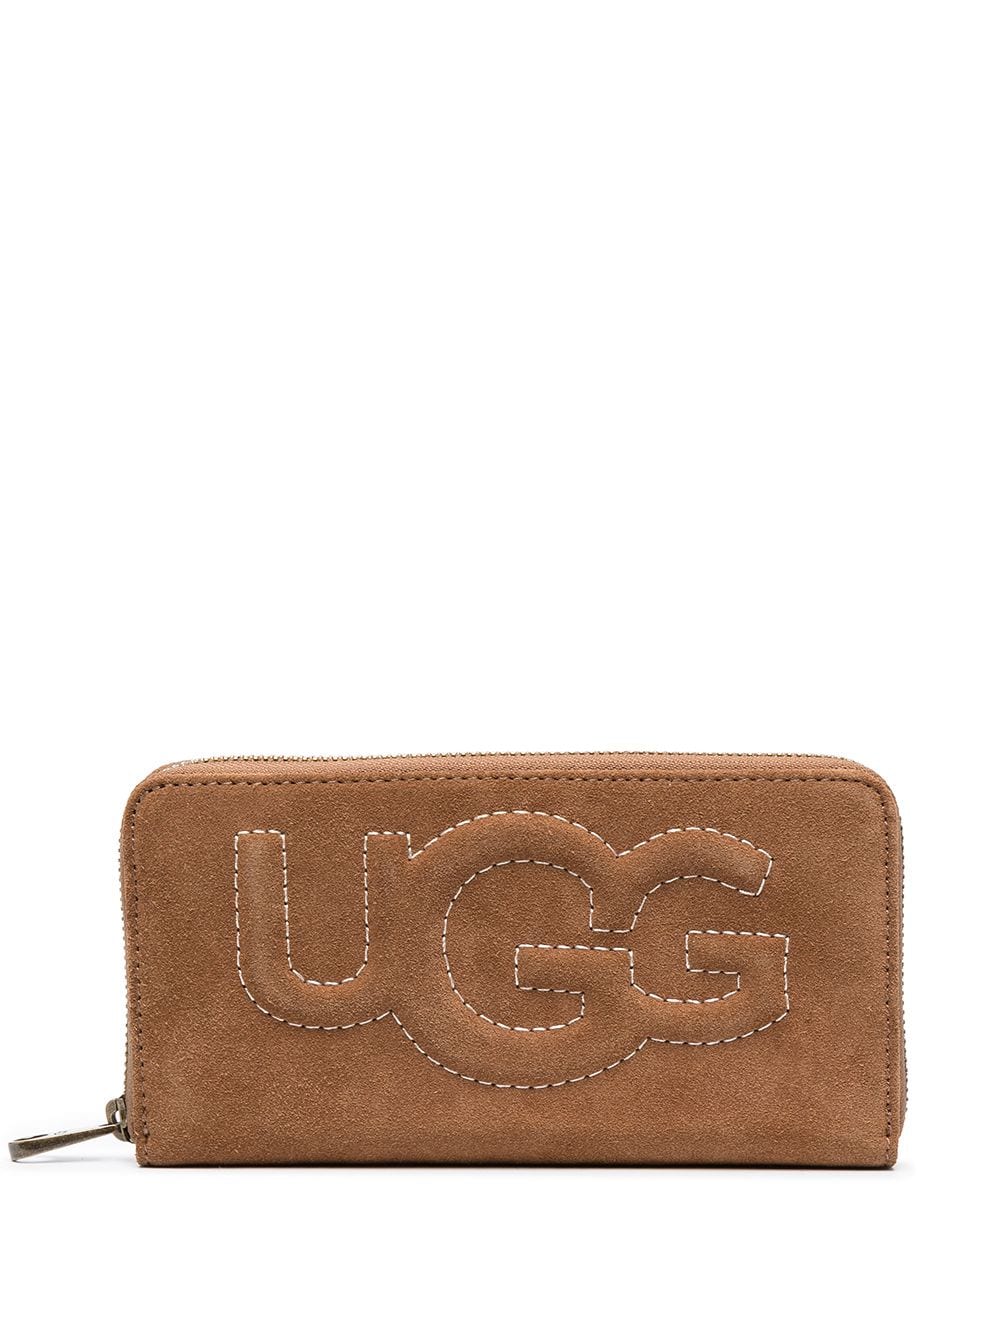 фото Ugg кошелек с вышитым логотипом